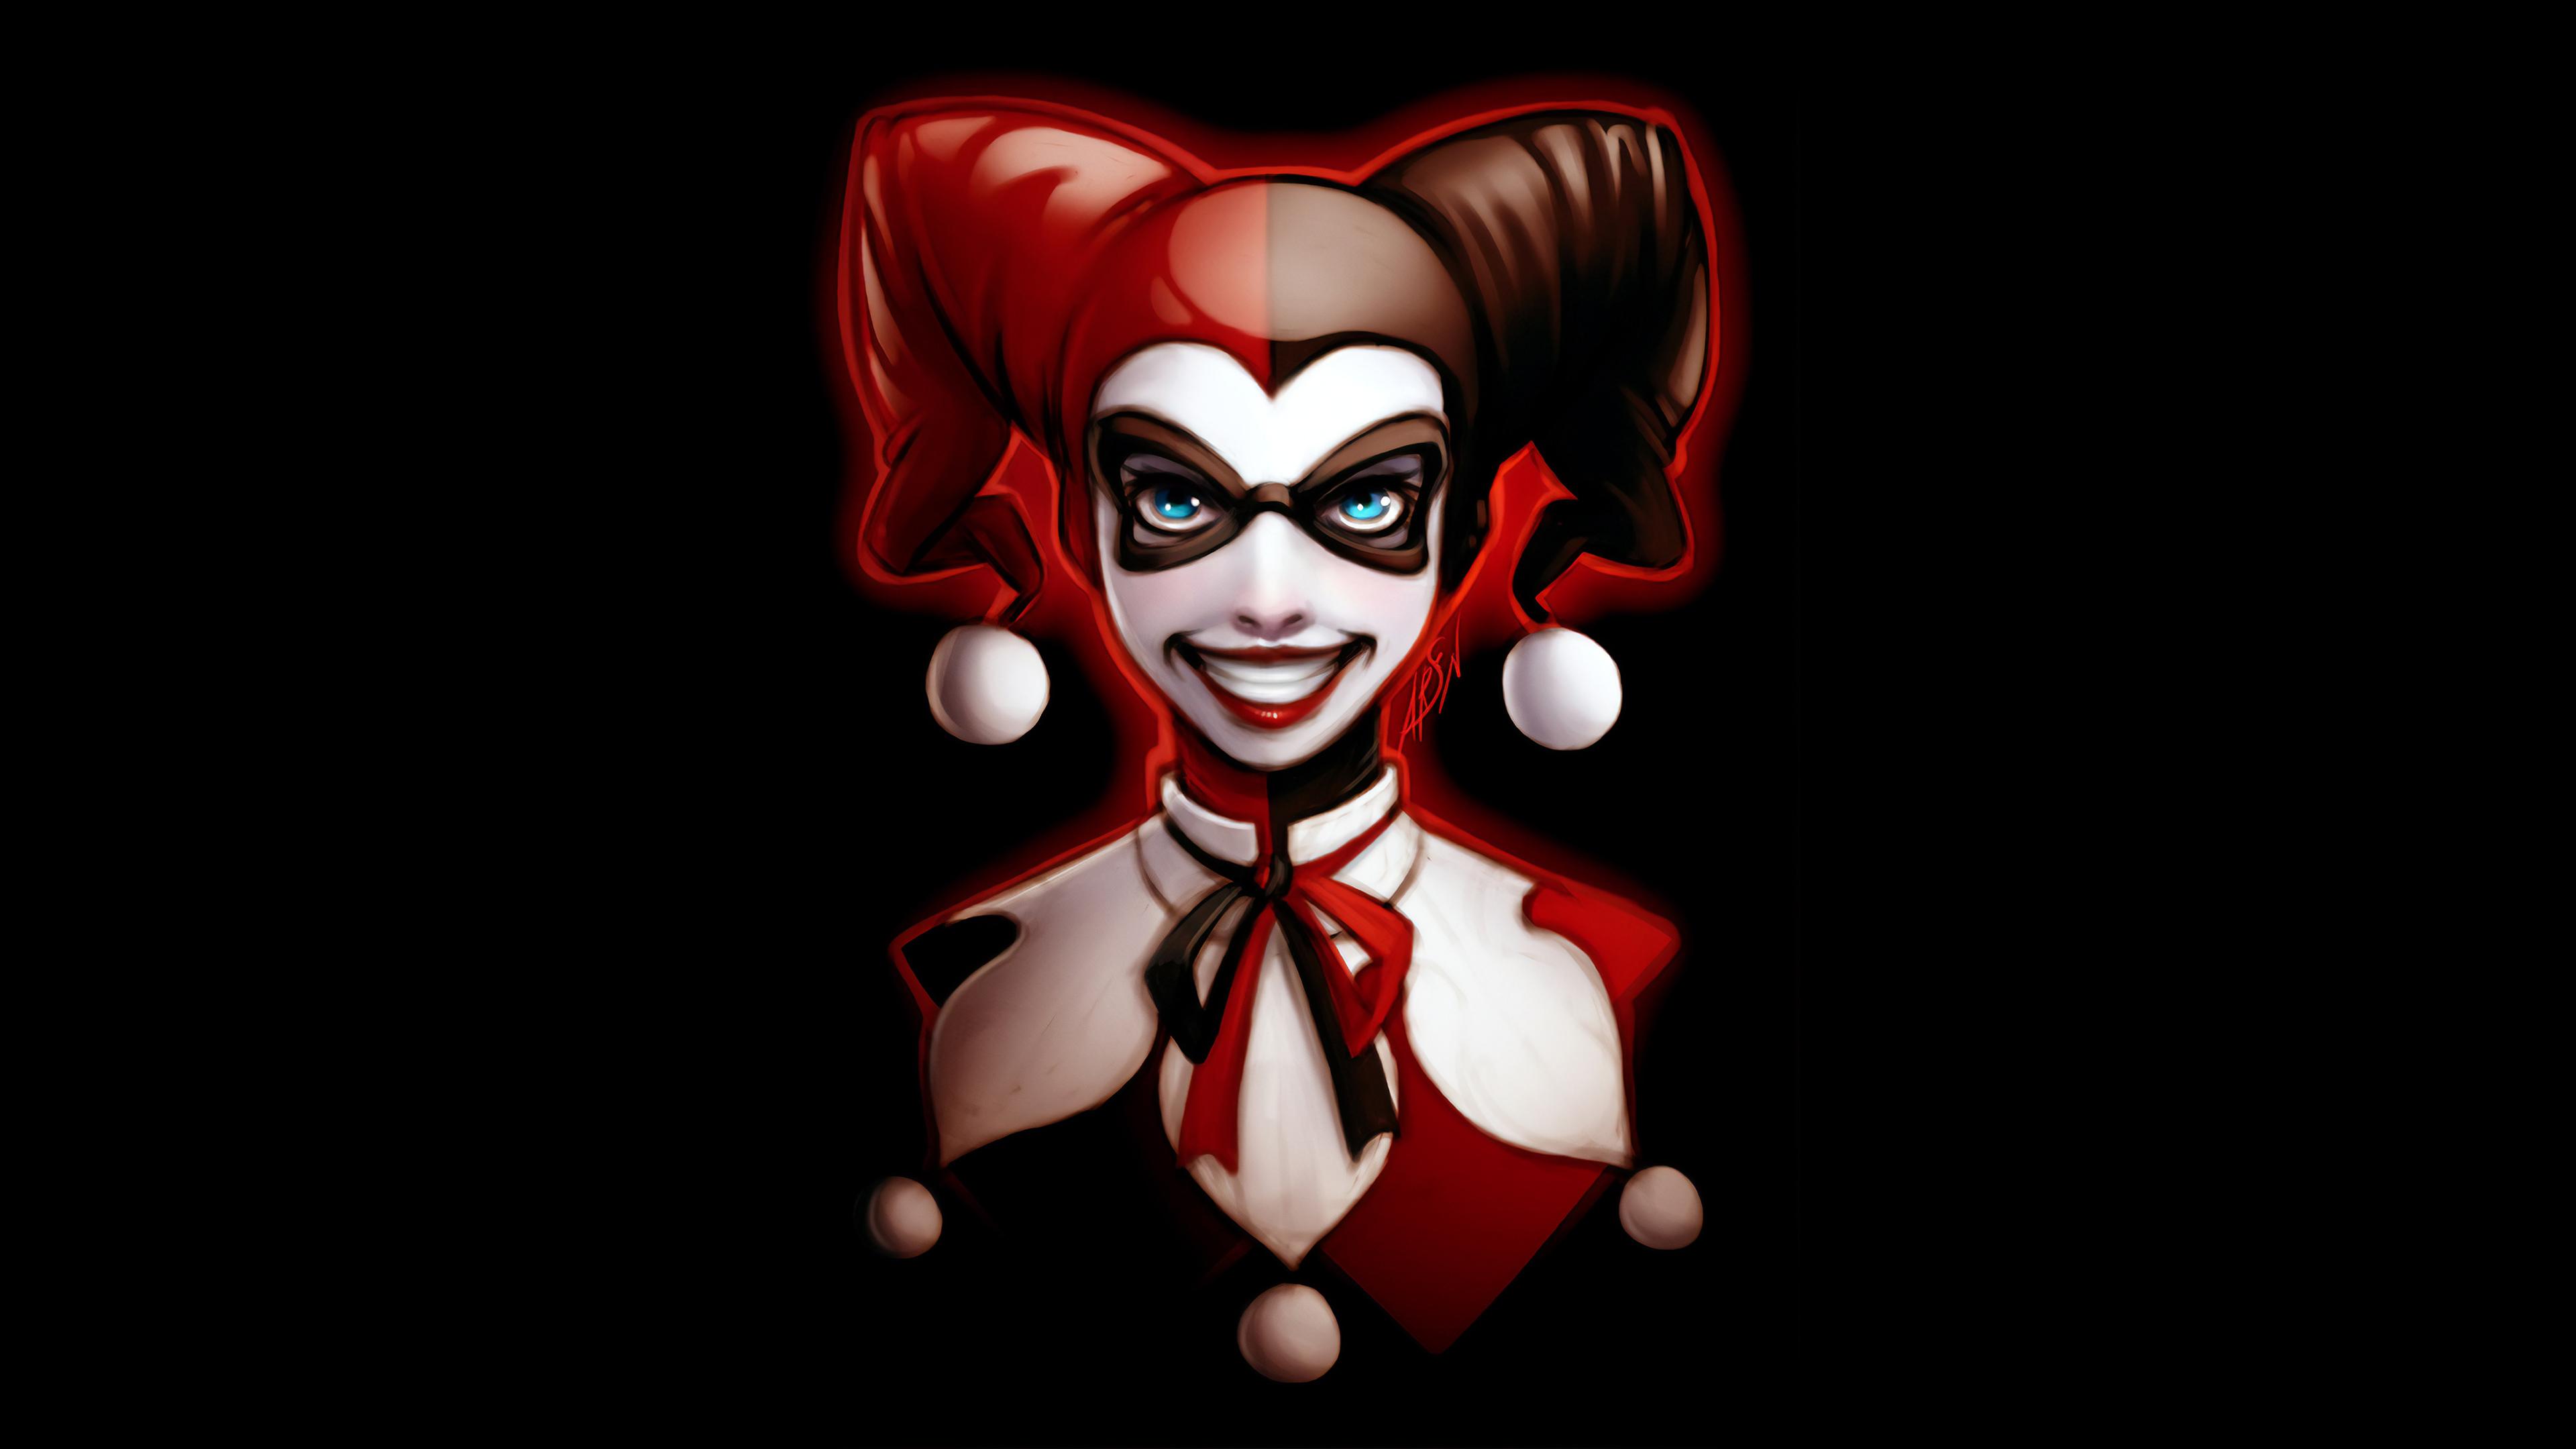 3840 x 2160 · jpeg - Harley Quinn Dark Art 4k, HD Superheroes, 4k Wallpapers, Images ...